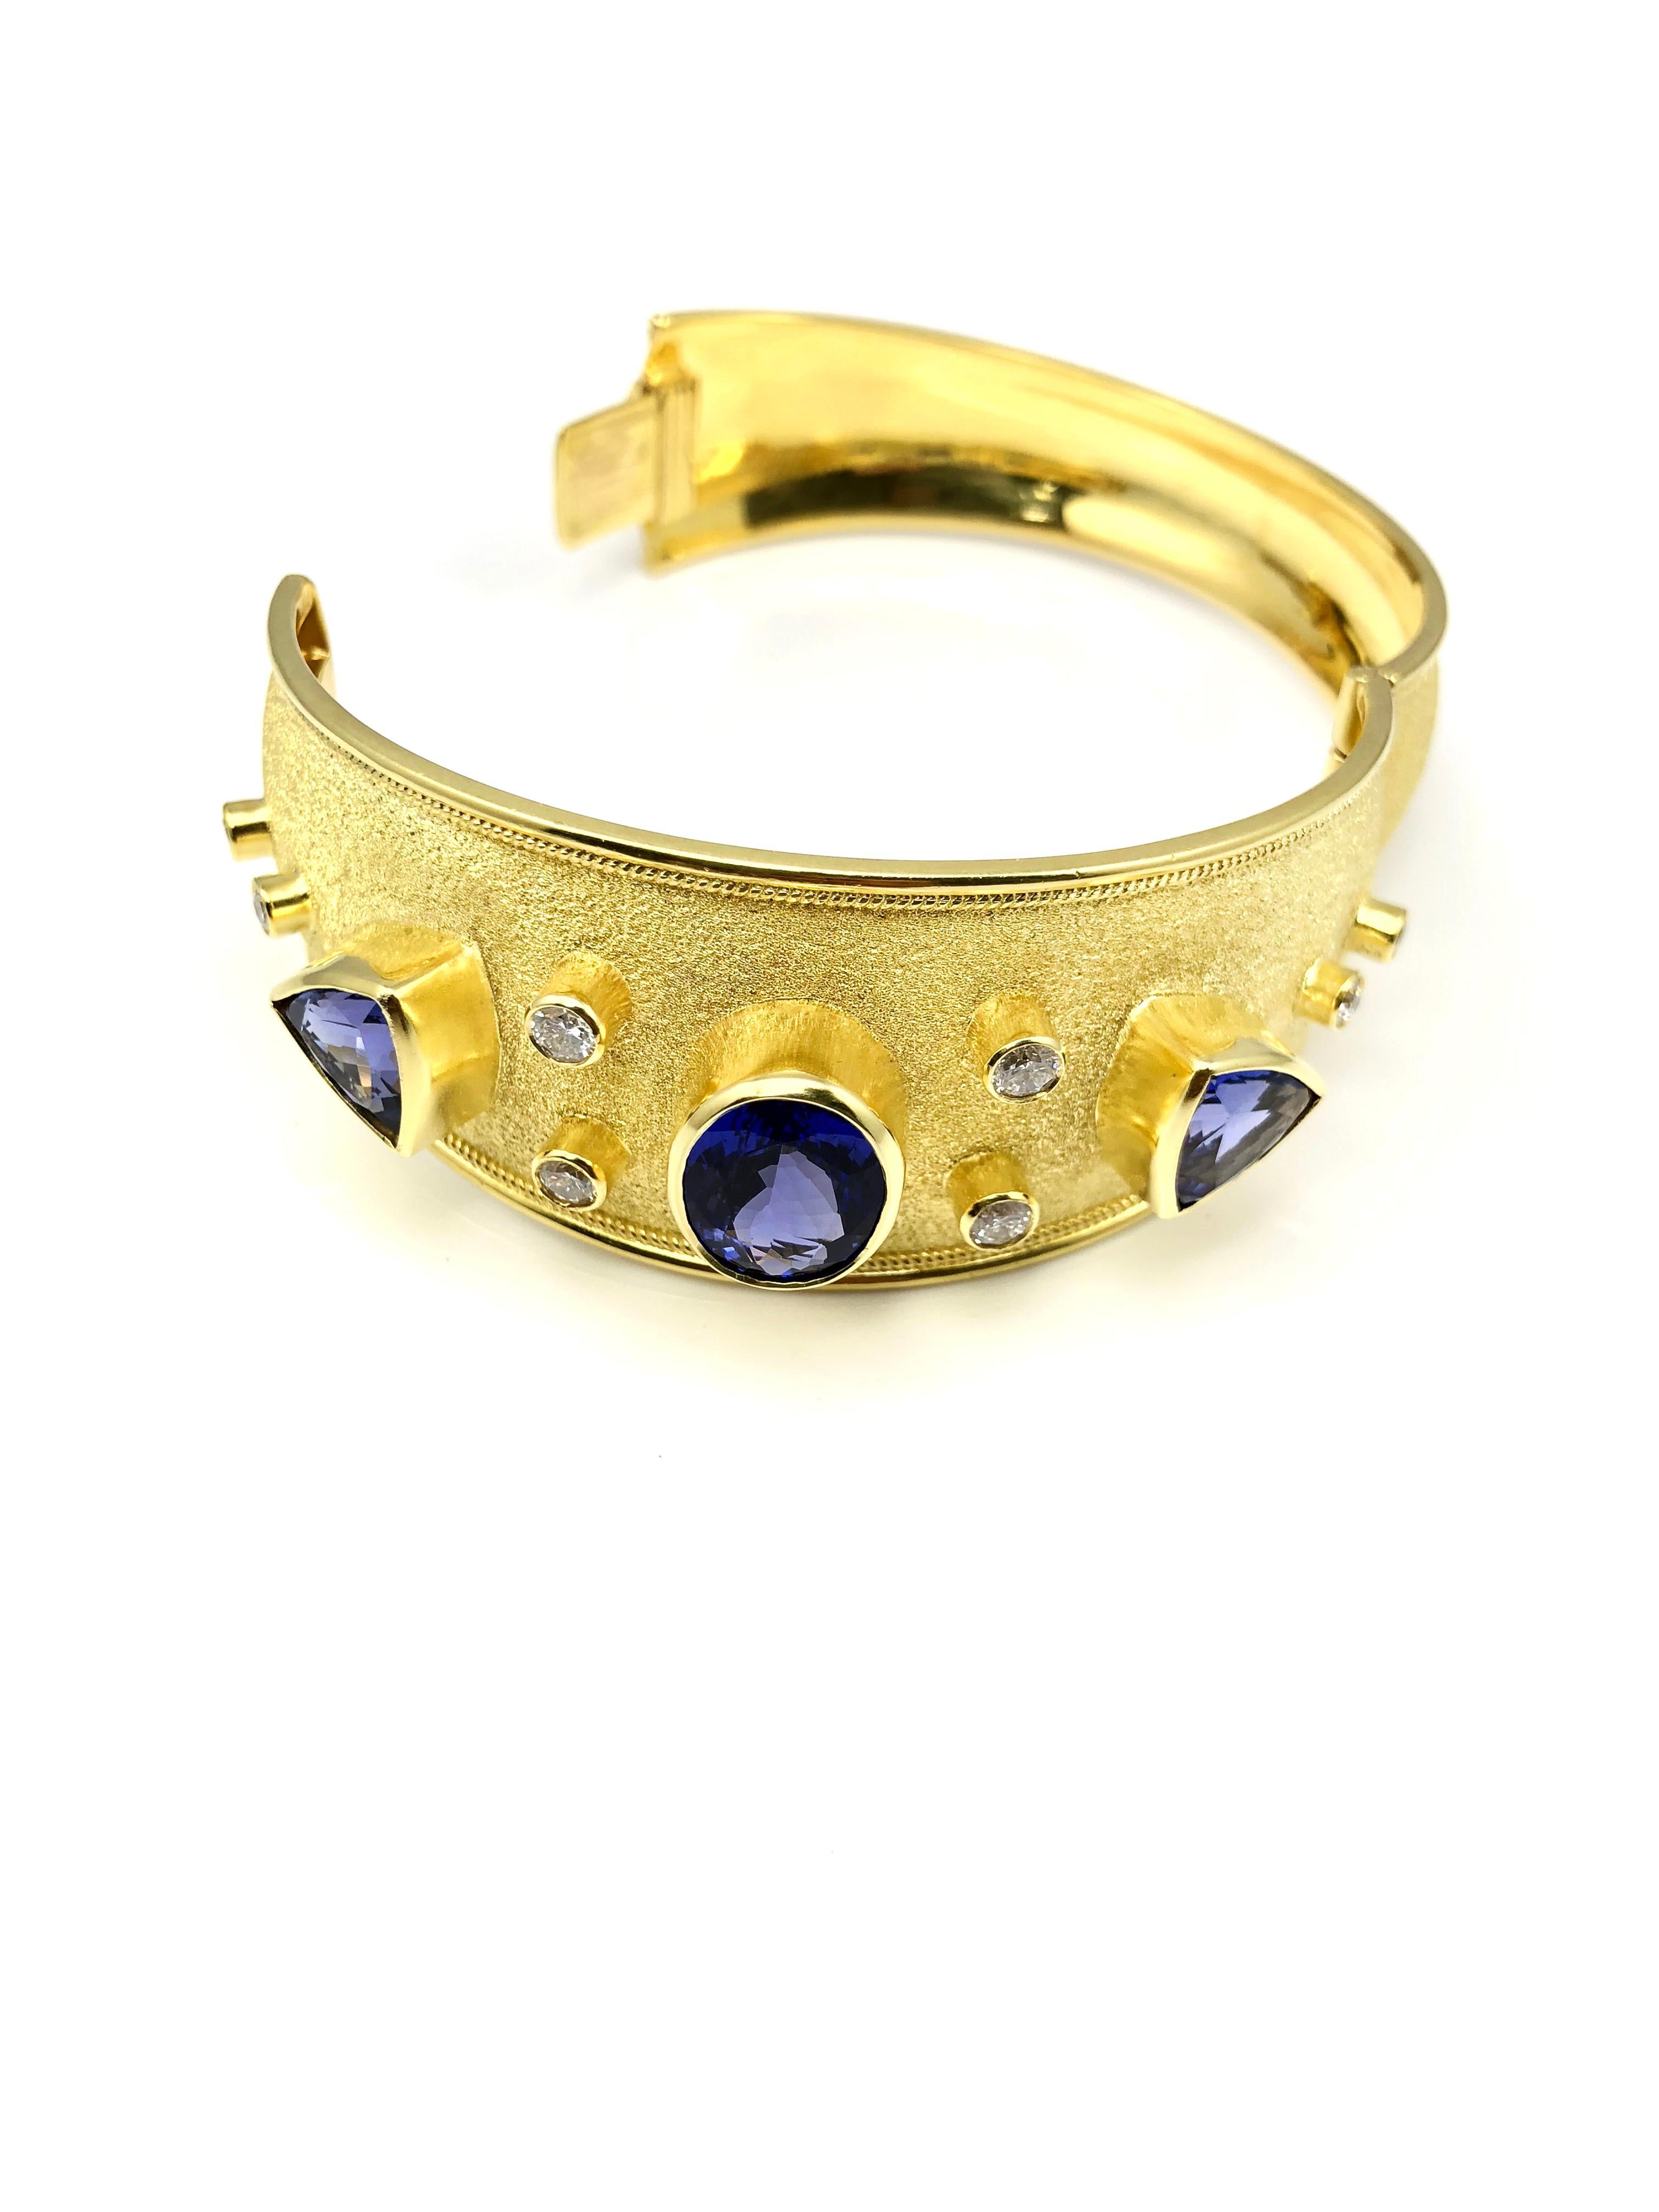 S.Georgios designer Bangle Bracelet est fait à la main à partir d'or jaune 18 carats solide tout fait sur mesure. Ce magnifique bracelet, dans sa simplicité, présente des tanzanites de forme ovale et triangulaire et 8 diamants sur un fond unique de